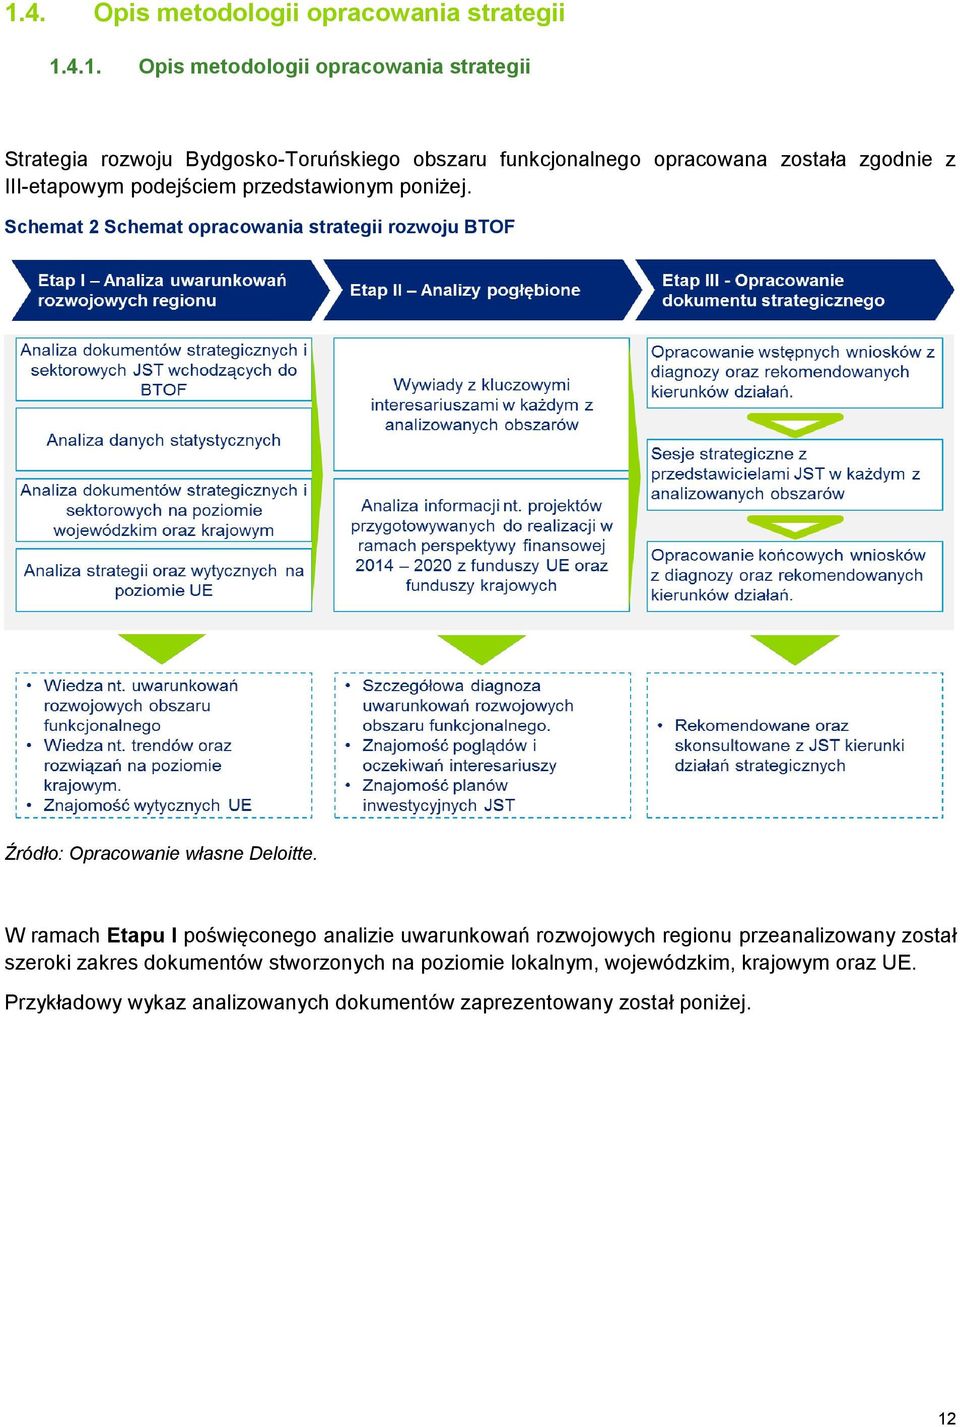 Schemat 2 Schemat opracowania strategii rozwoju BTOF Źródło: Opracowanie własne Deloitte.